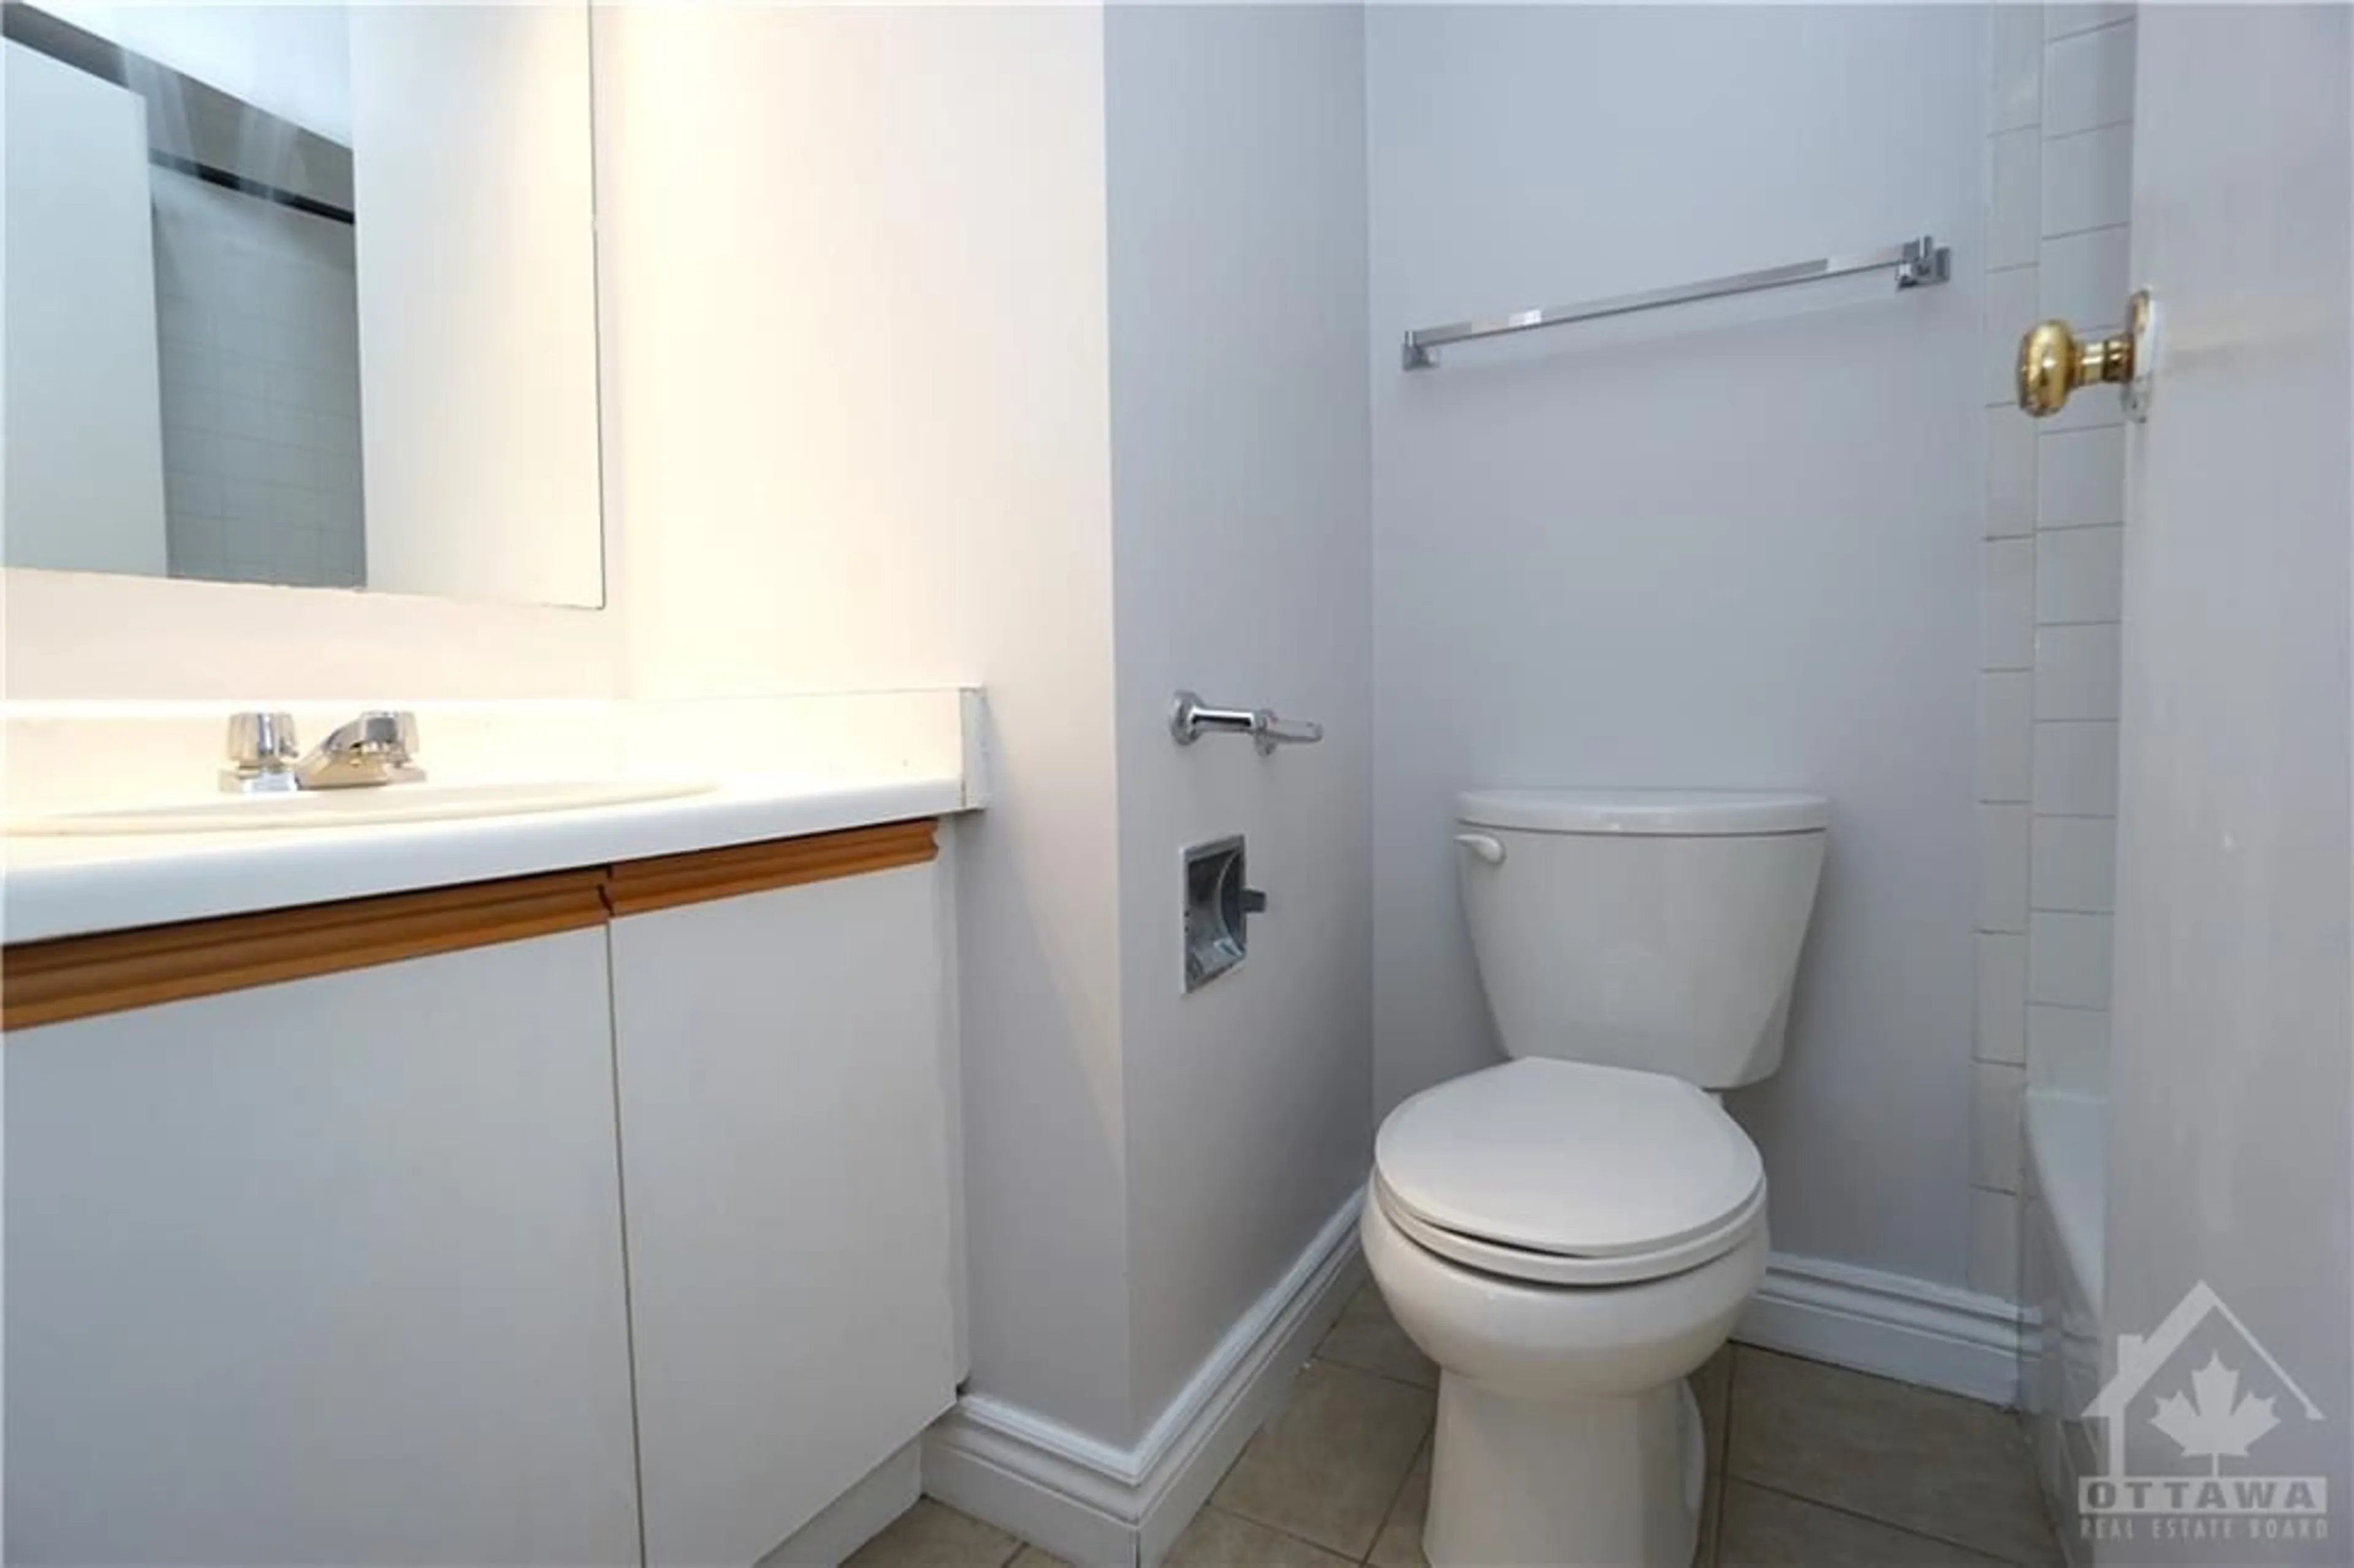 Standard bathroom for 154 NELSON St #201, Ottawa Ontario K1N 7R5